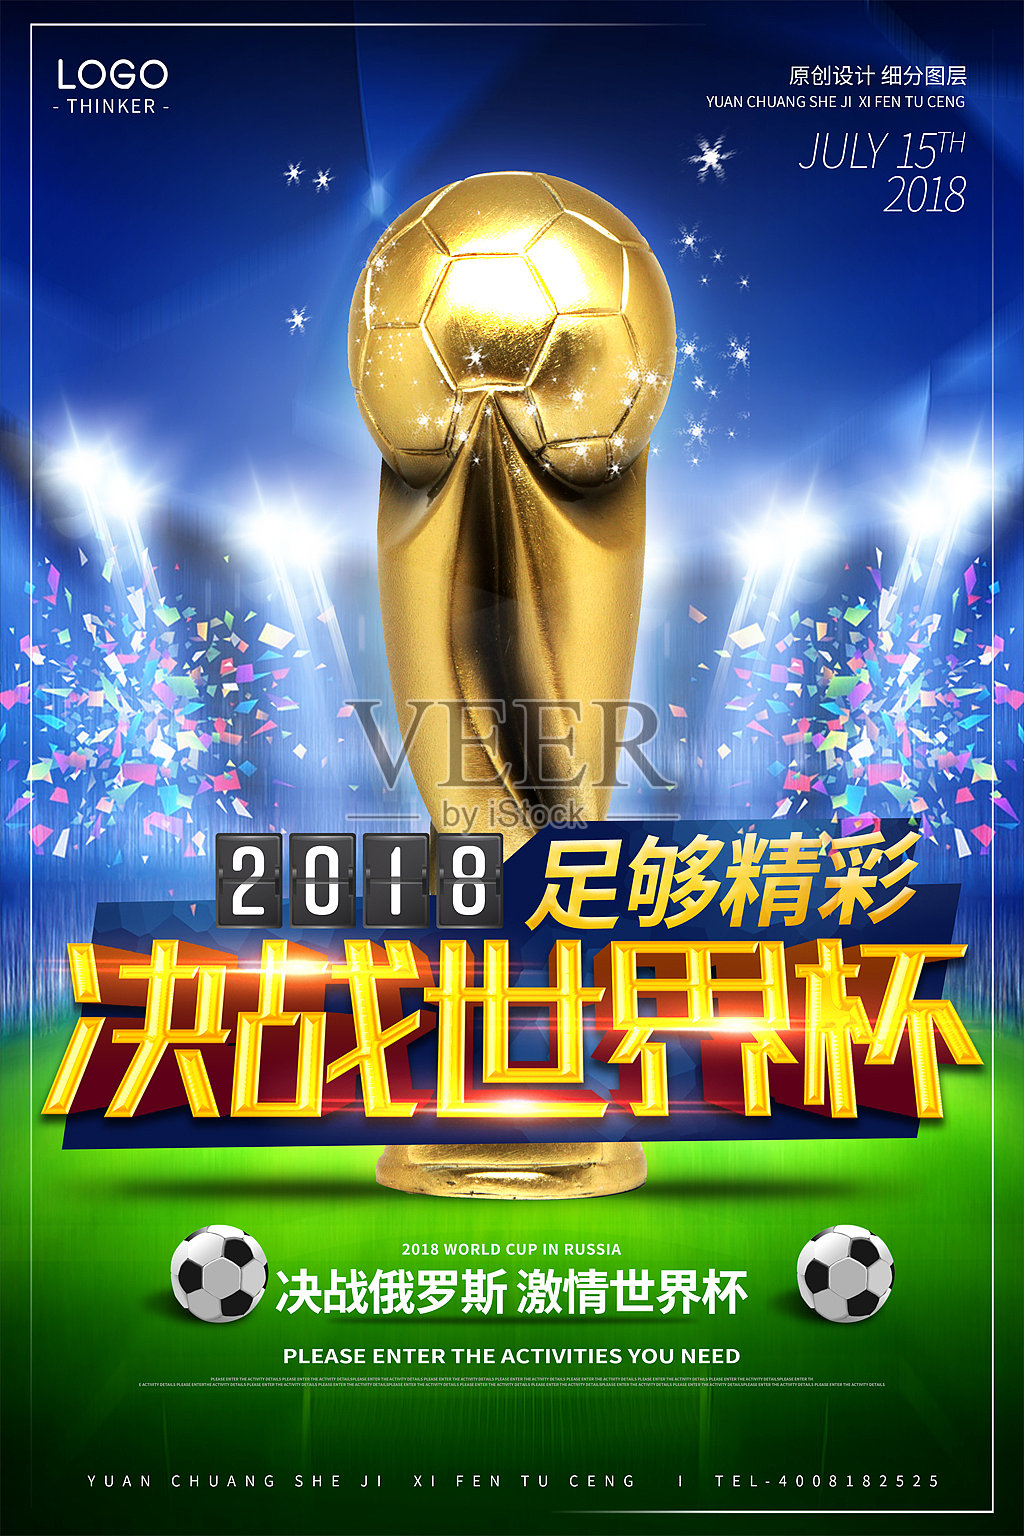 酷炫时尚决战世界杯宣传海报设计模板设计模板素材